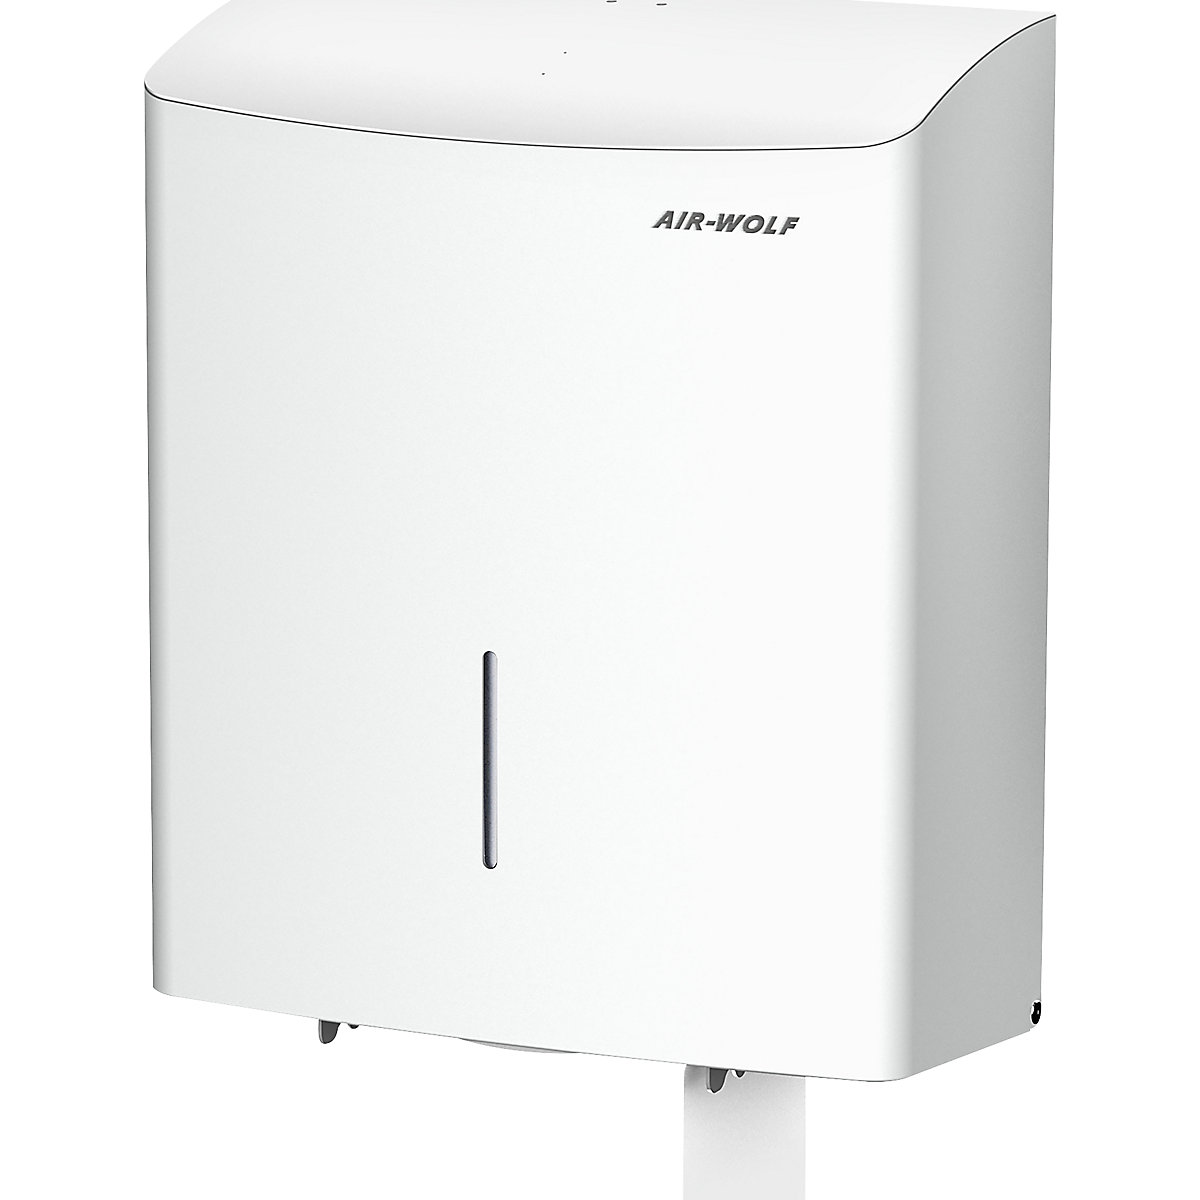 Duplex-toiletpapierdispenser - AIR-WOLF